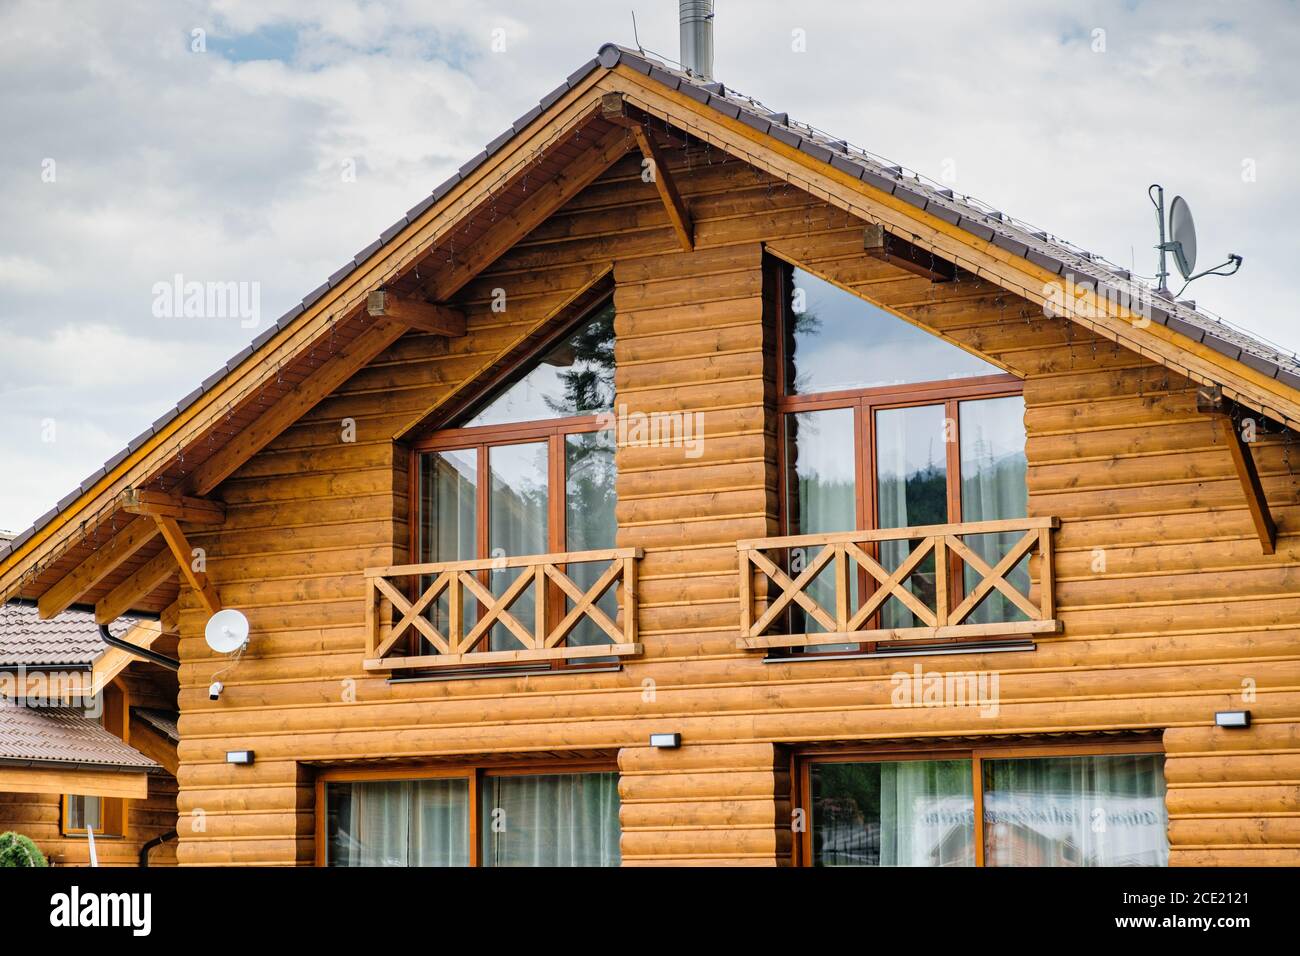 Grandes casas de madera fotografías e imágenes de alta resolución - Alamy